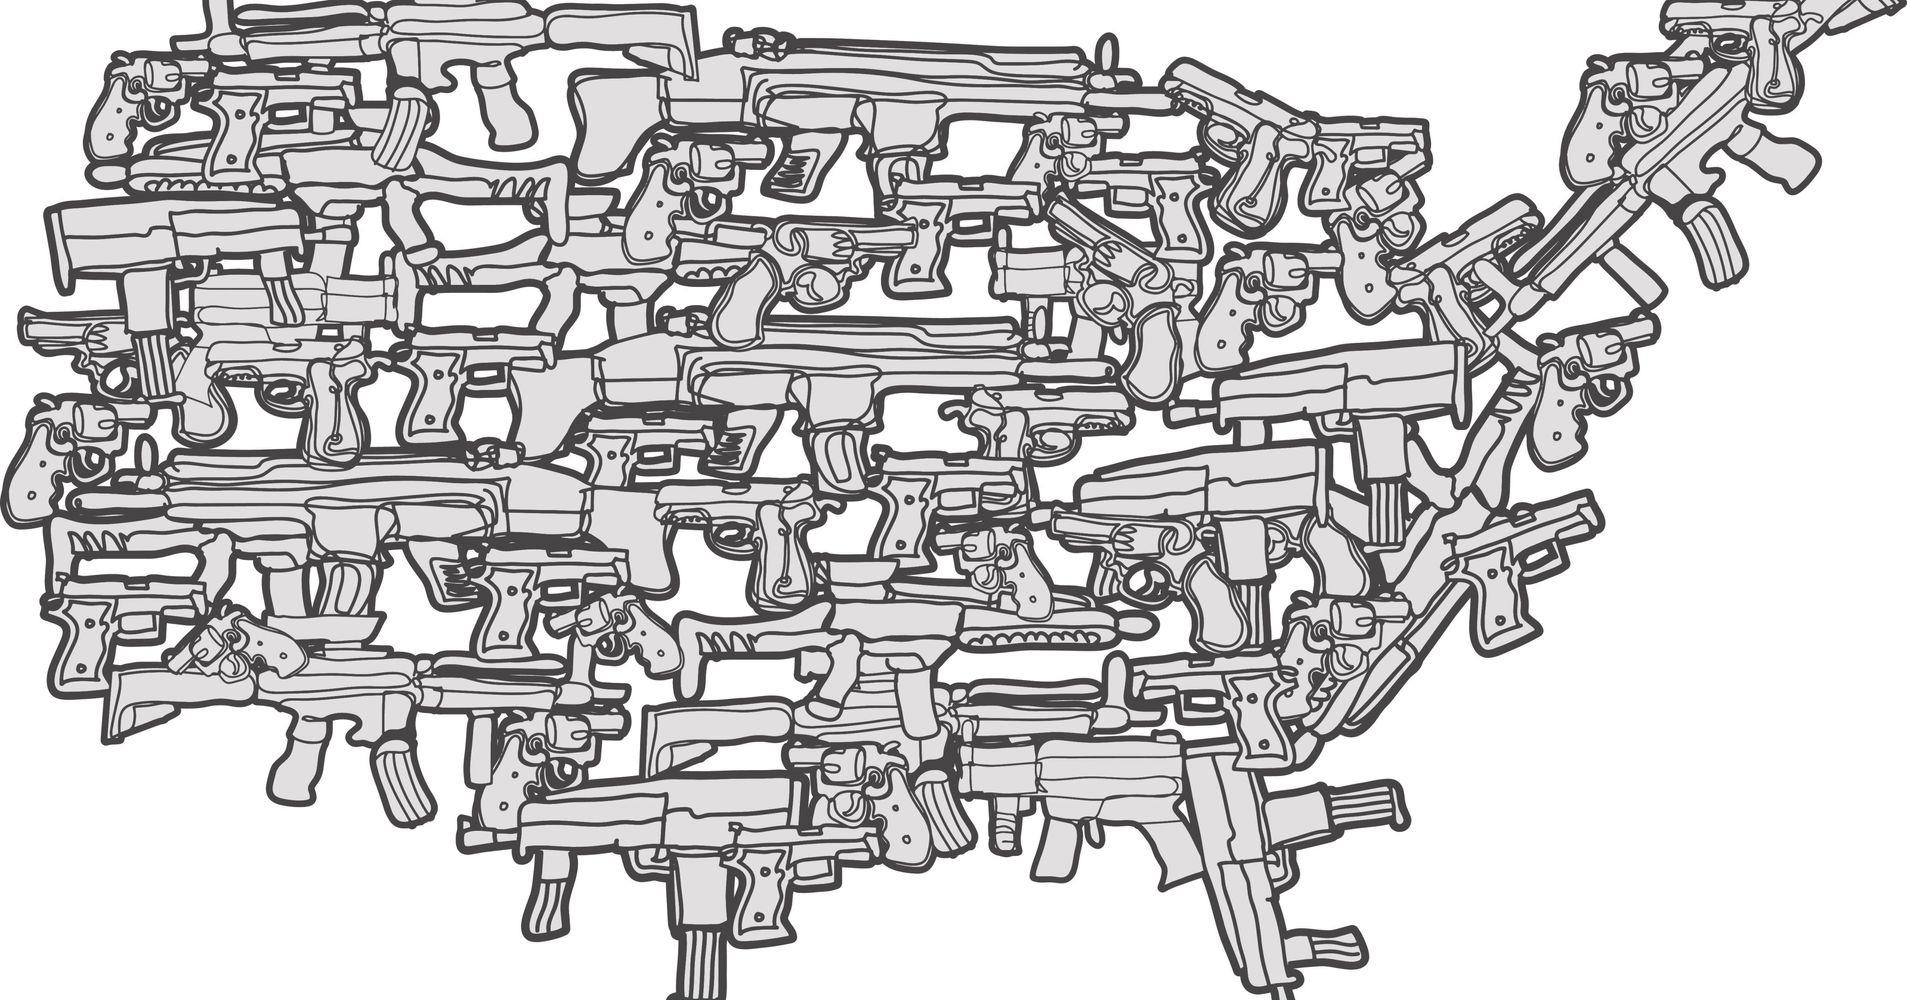 Scons Arguments Against Gun